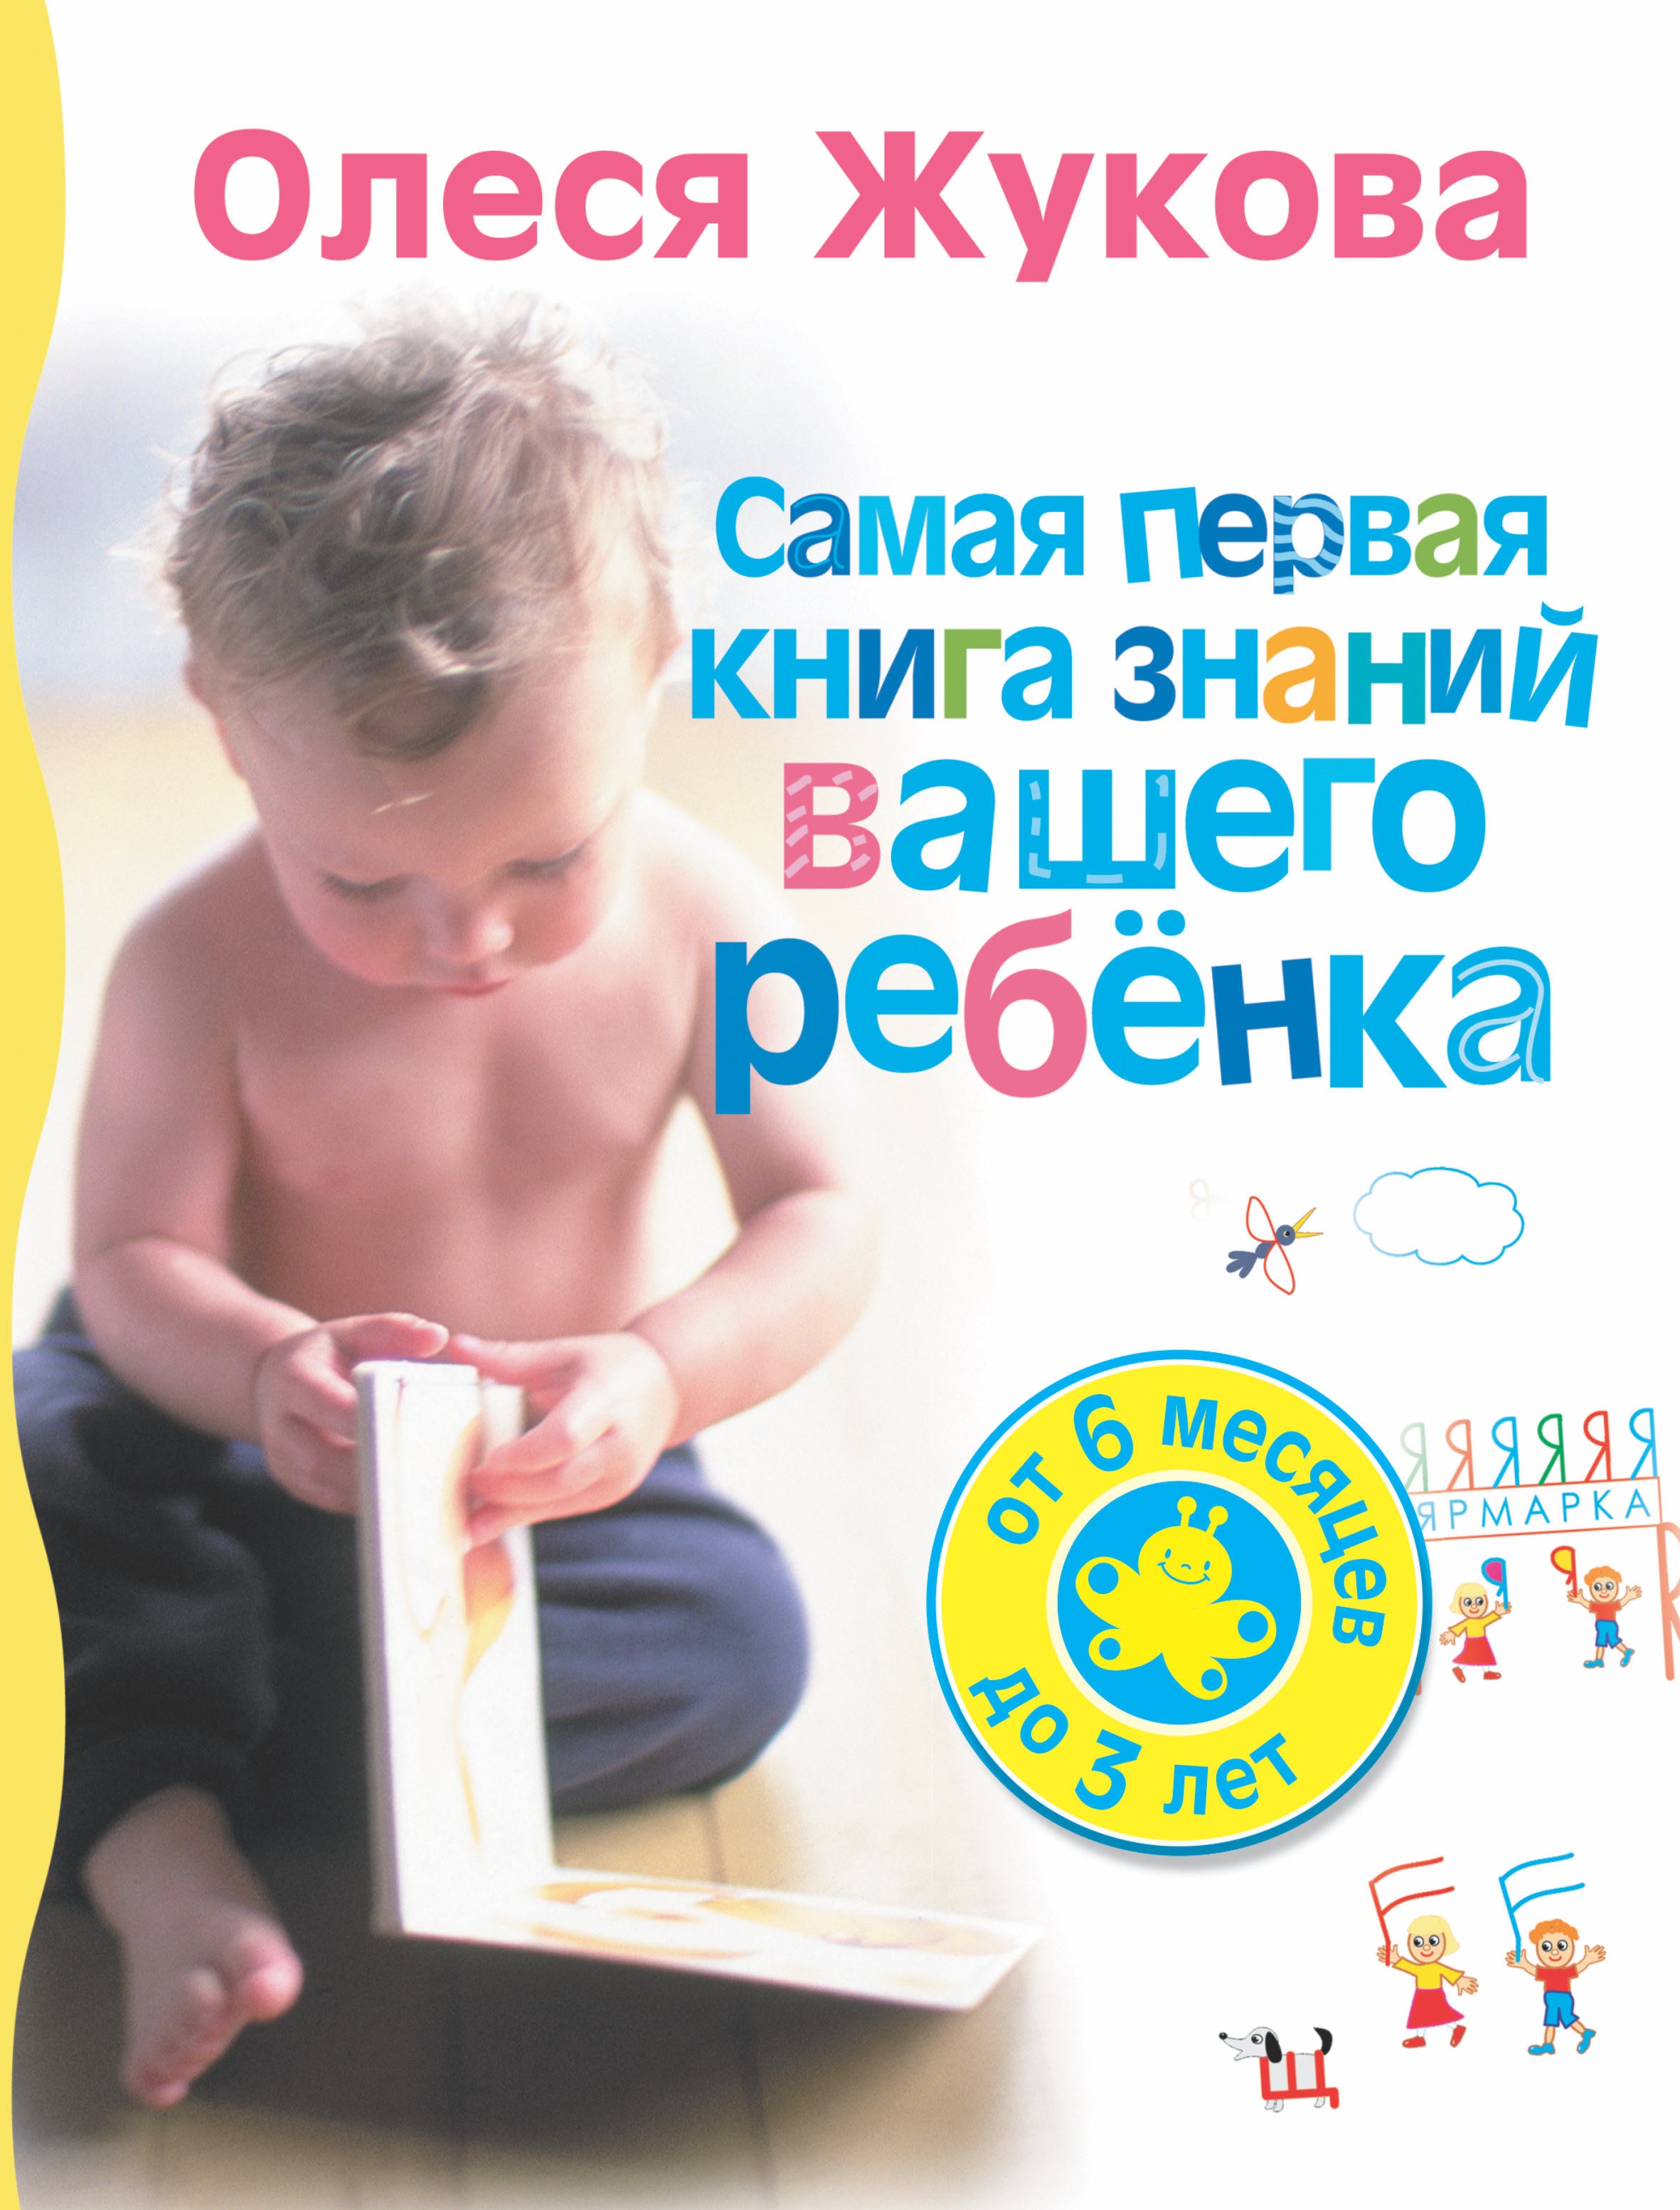 Жукова Олеся Станиславовна Самая первая книга знаний вашего ребенка. От 6 месяцев до 3 лет - страница 0